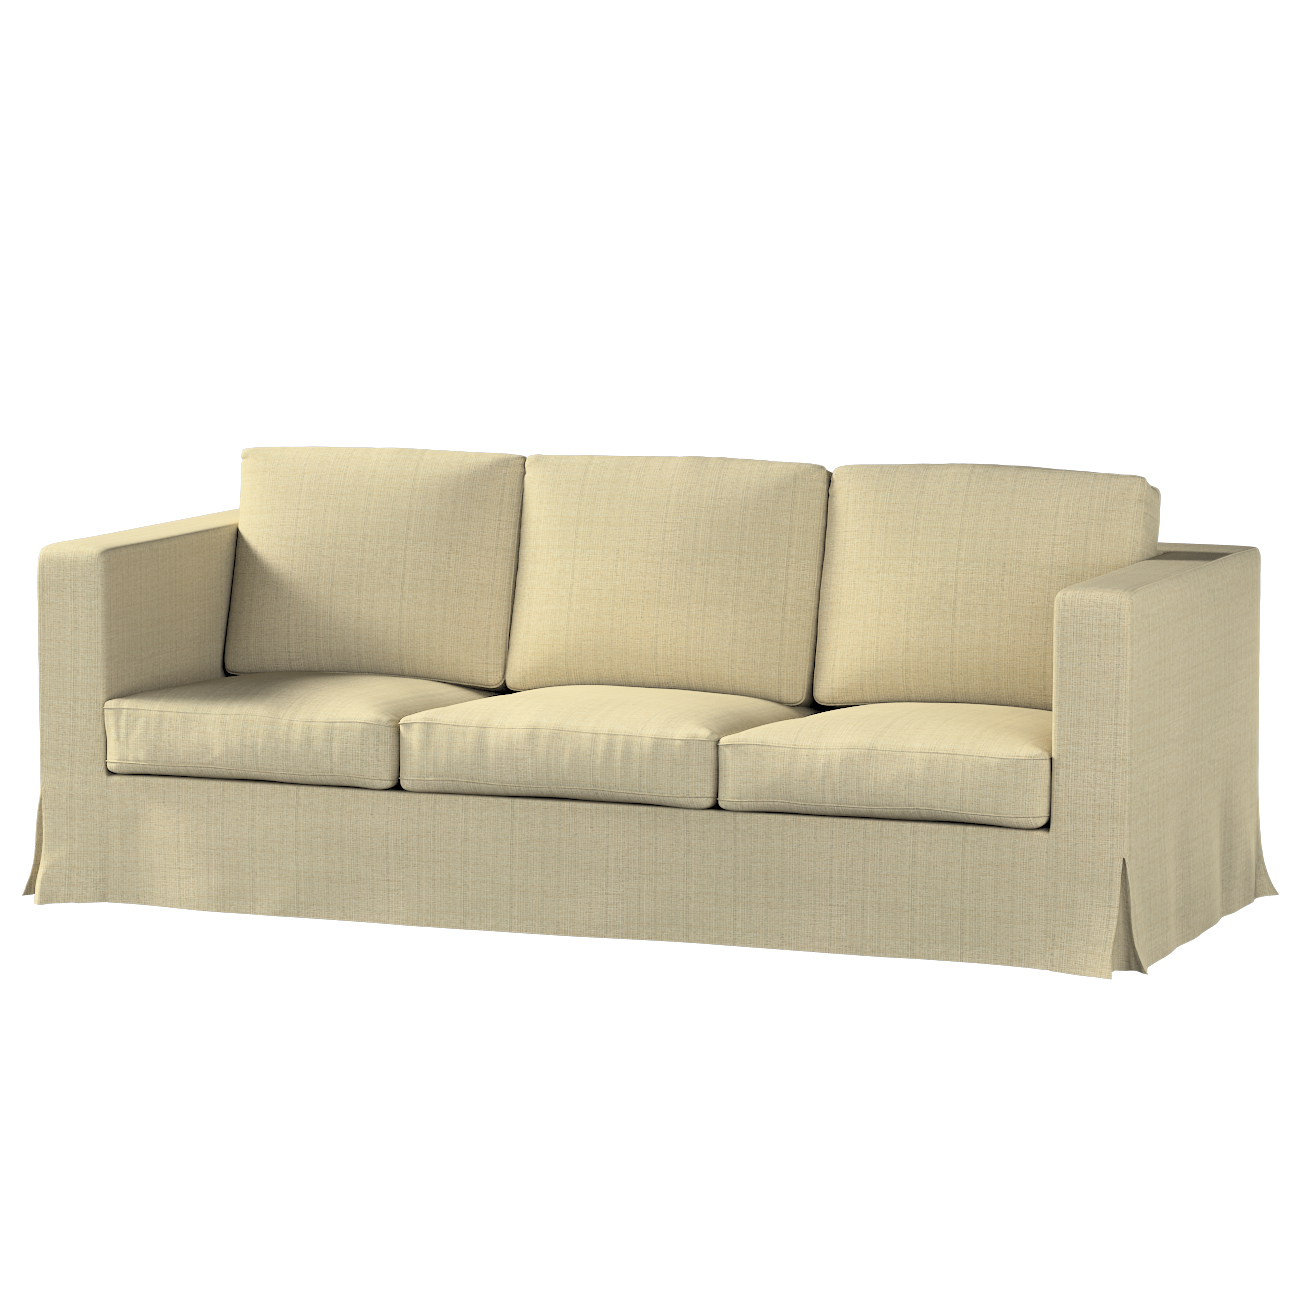 Bezug für Karlanda 3-Sitzer Sofa nicht ausklappbar, lang, beige-creme, Bezu günstig online kaufen